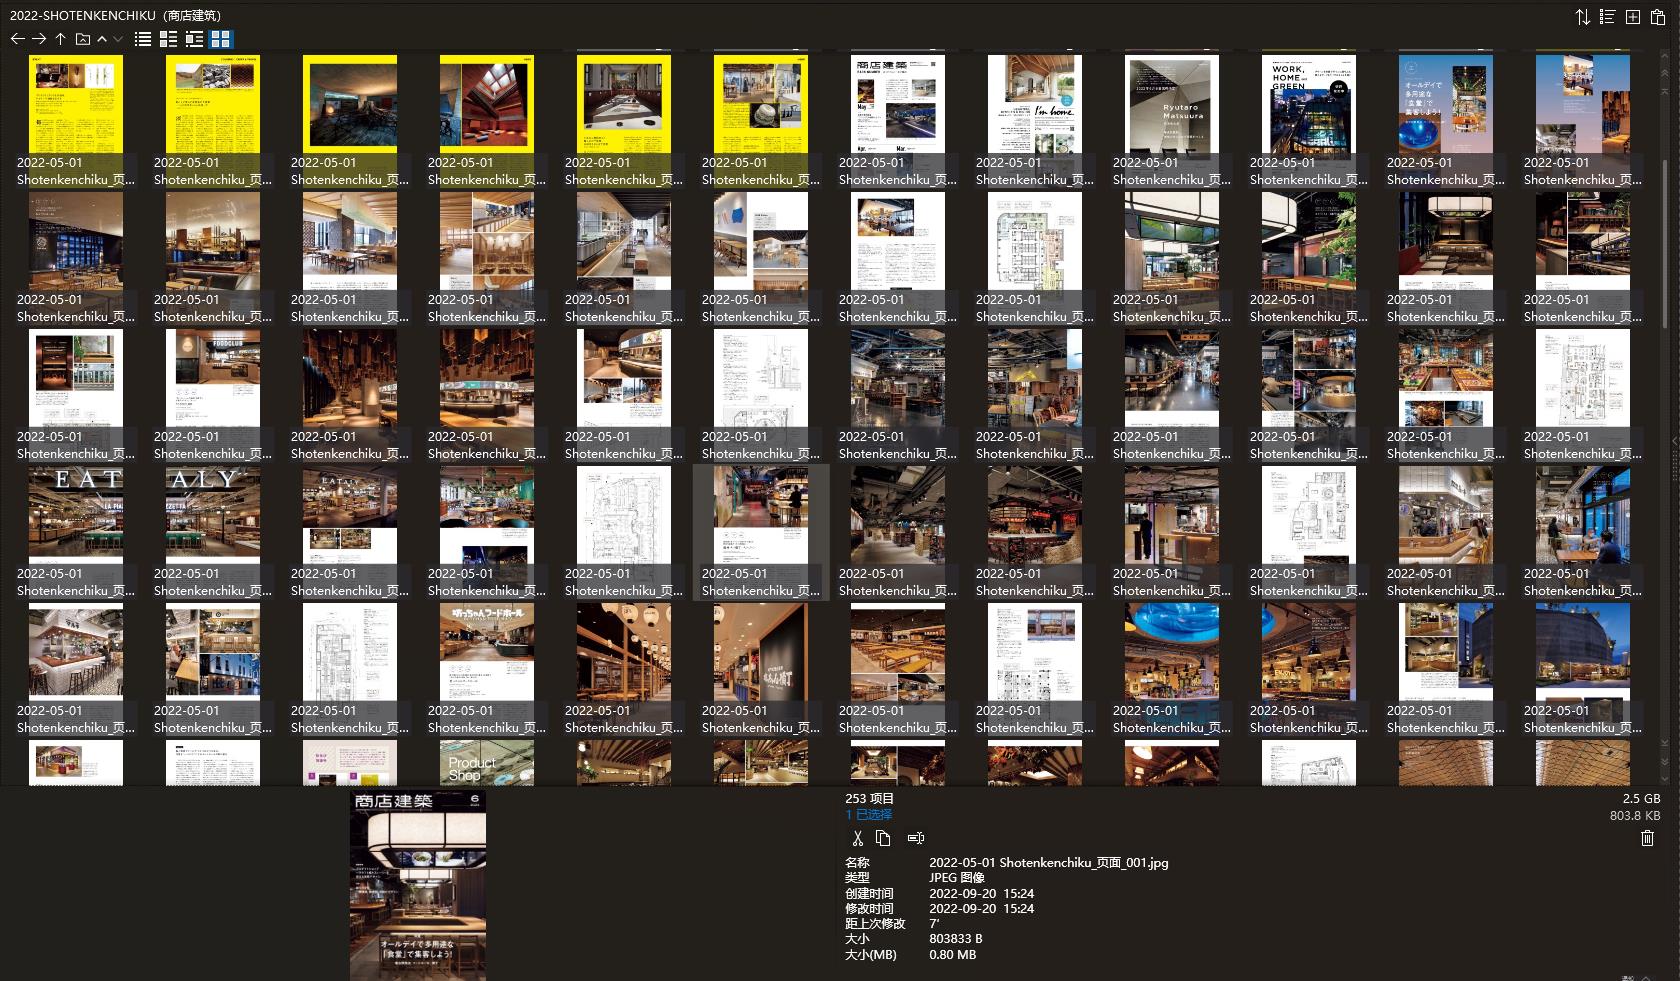 商店建筑设计杂志,Shotenkenchiku设计杂志,室内设计电子杂志,杂志下载,商店建筑杂志合集